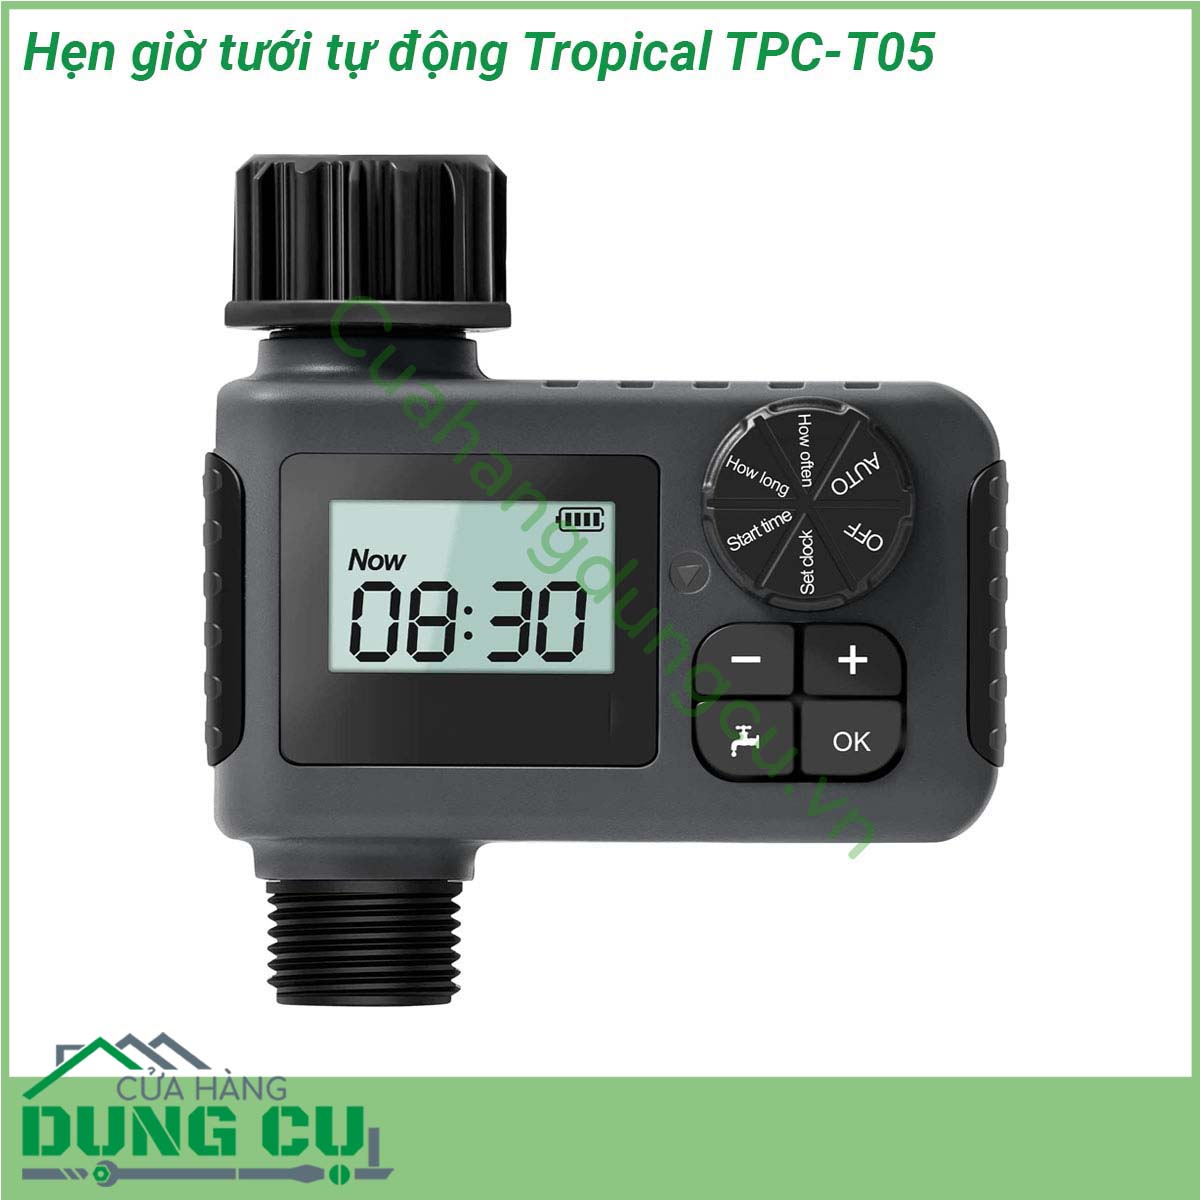 Hẹn giờ tưới tự động Tropical TPC-T05 thiết kế nhỏ gọn thao tác cài đặt đơn giản giúp tưới dễ dàng độ chống nước IP55 giúp bạn dễ dàng sử dụng ngoài trời thích hợp cho tưới cây tưới tiêu nông nghiệp làm ẩm nhà kính loại bỏ bụi làm mát sân trong và nhiều hoạt động khác liên quan